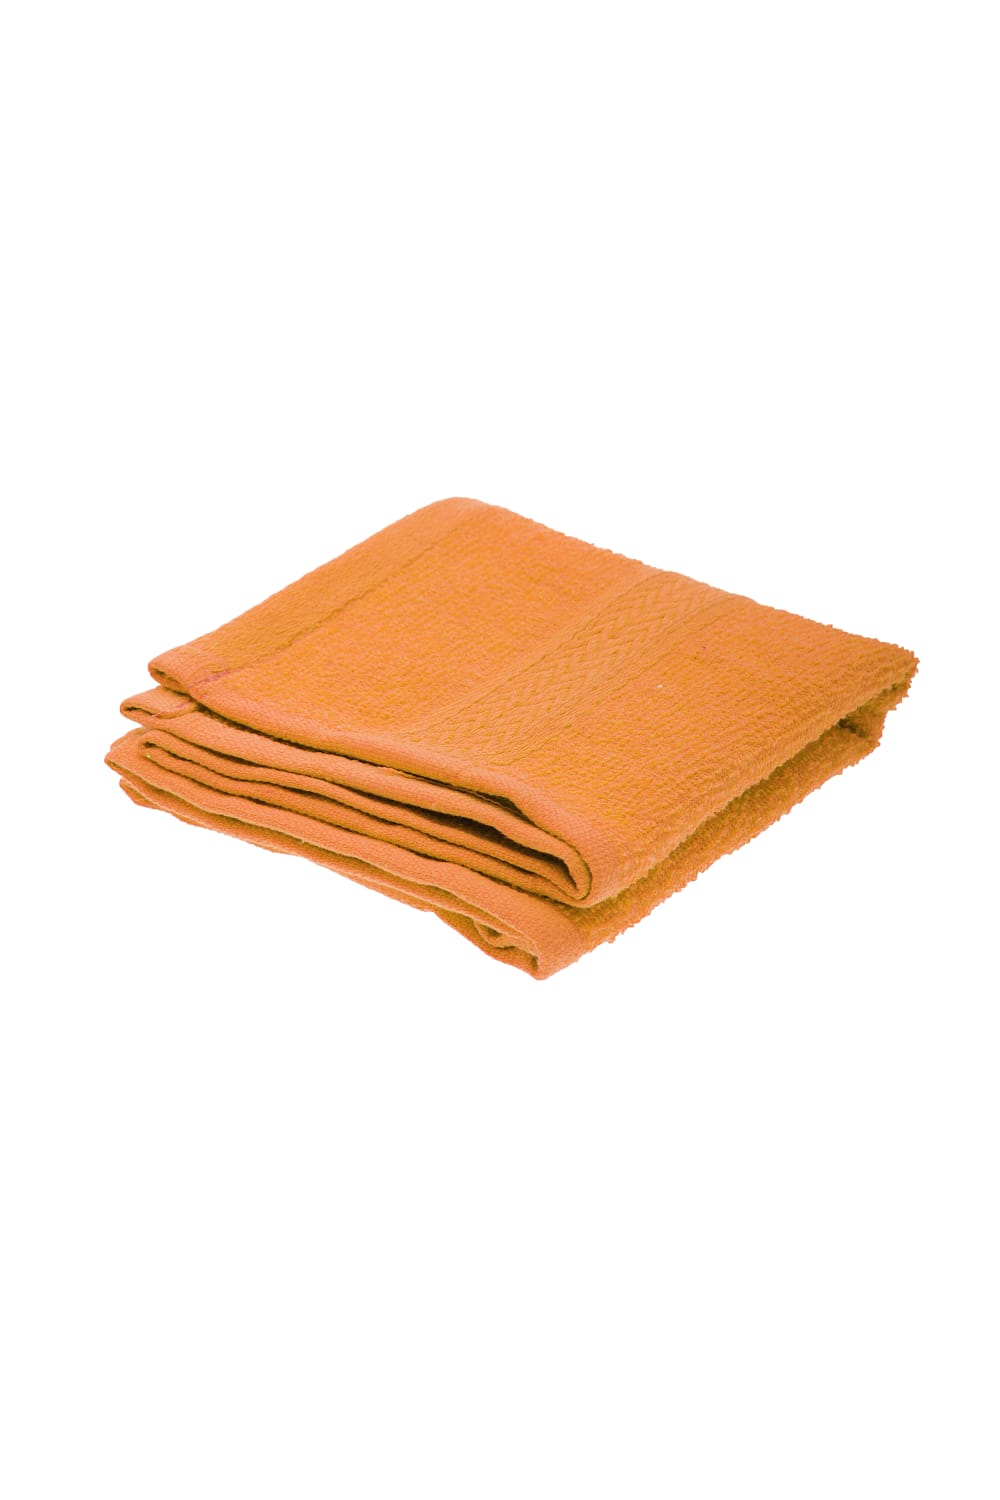 Jassz Plain Guest Hand Towel (350 GSM) (Orange) (One Size)